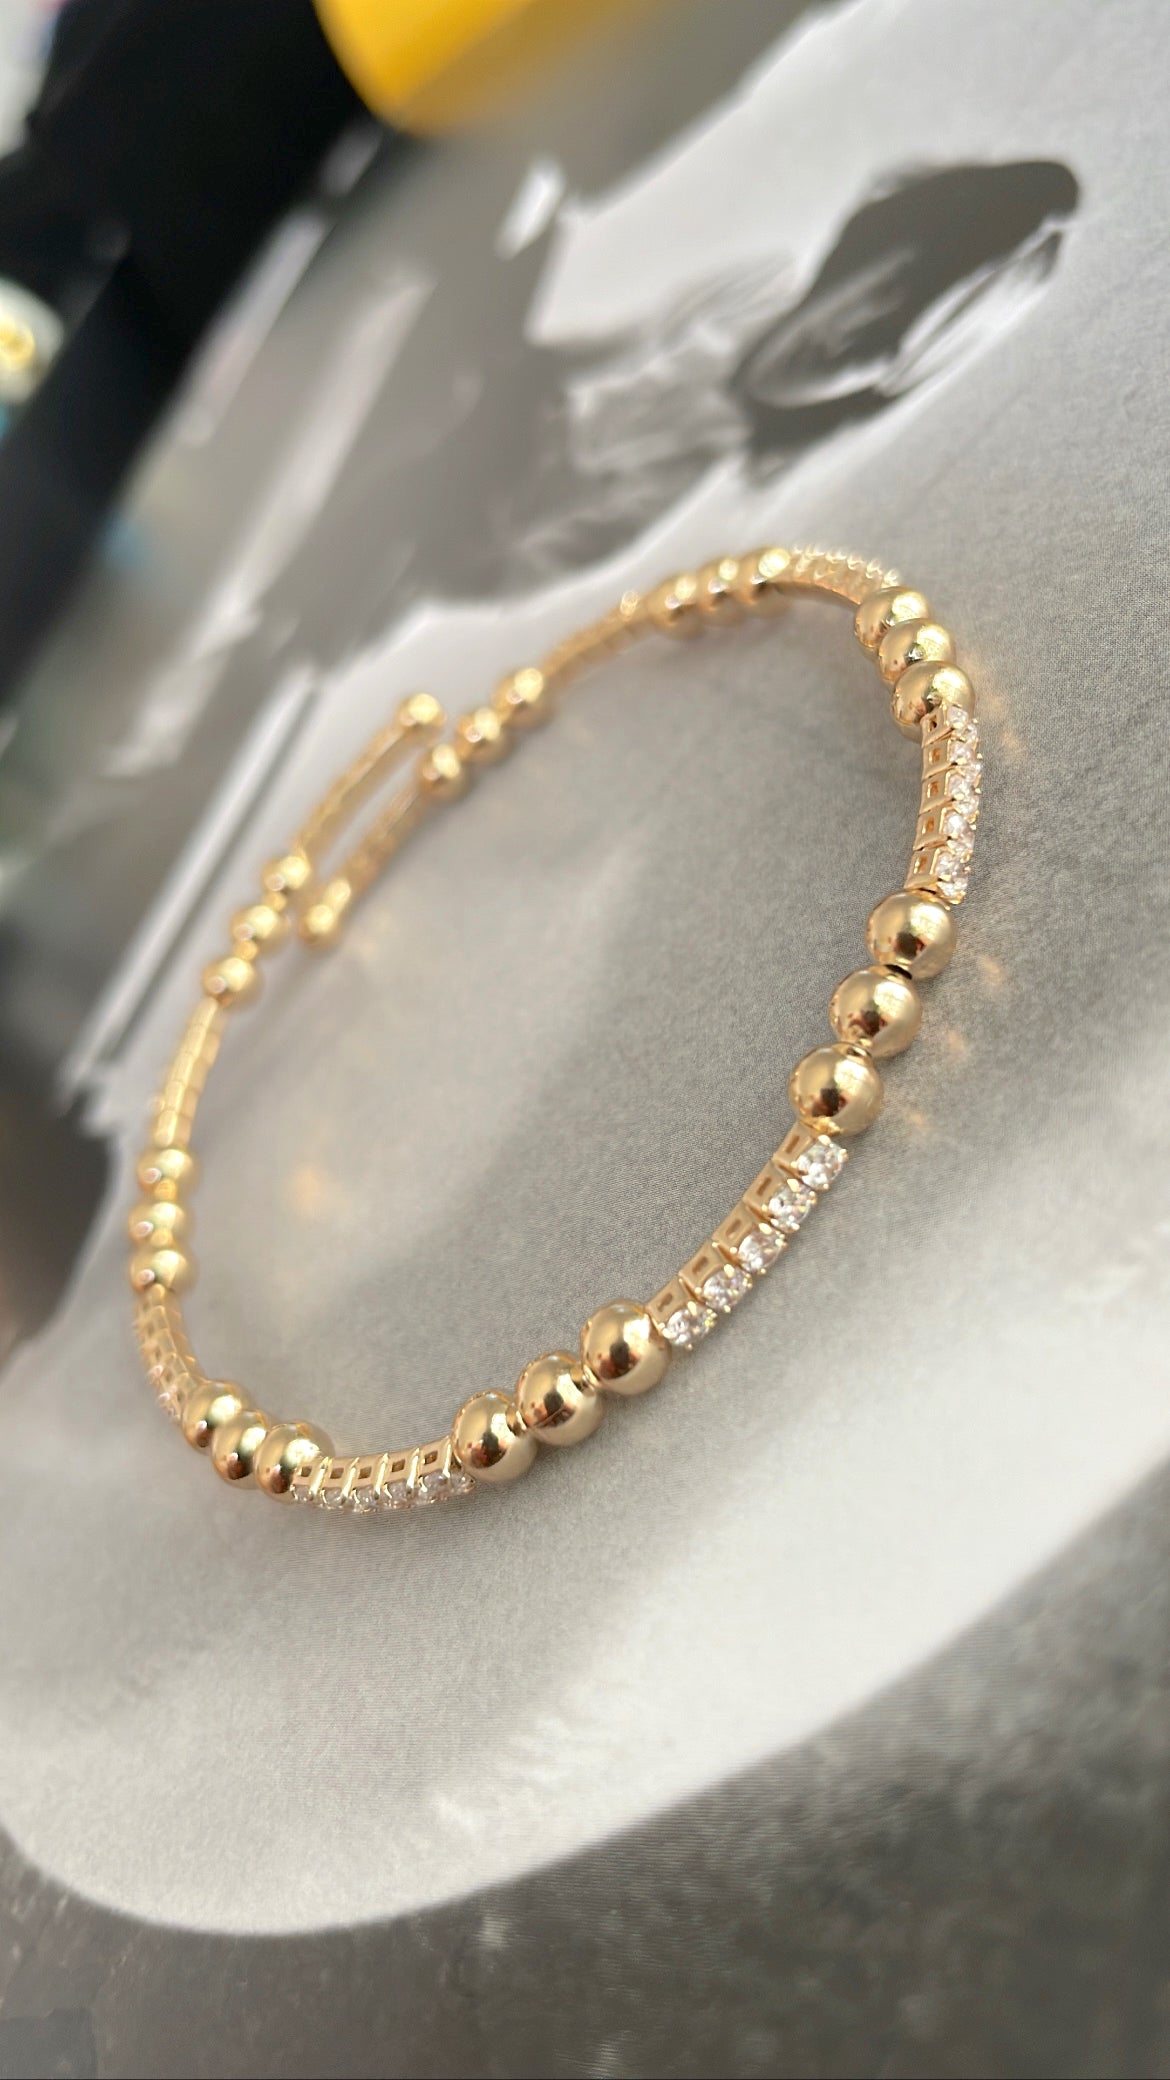 Zircon and beads bracelet